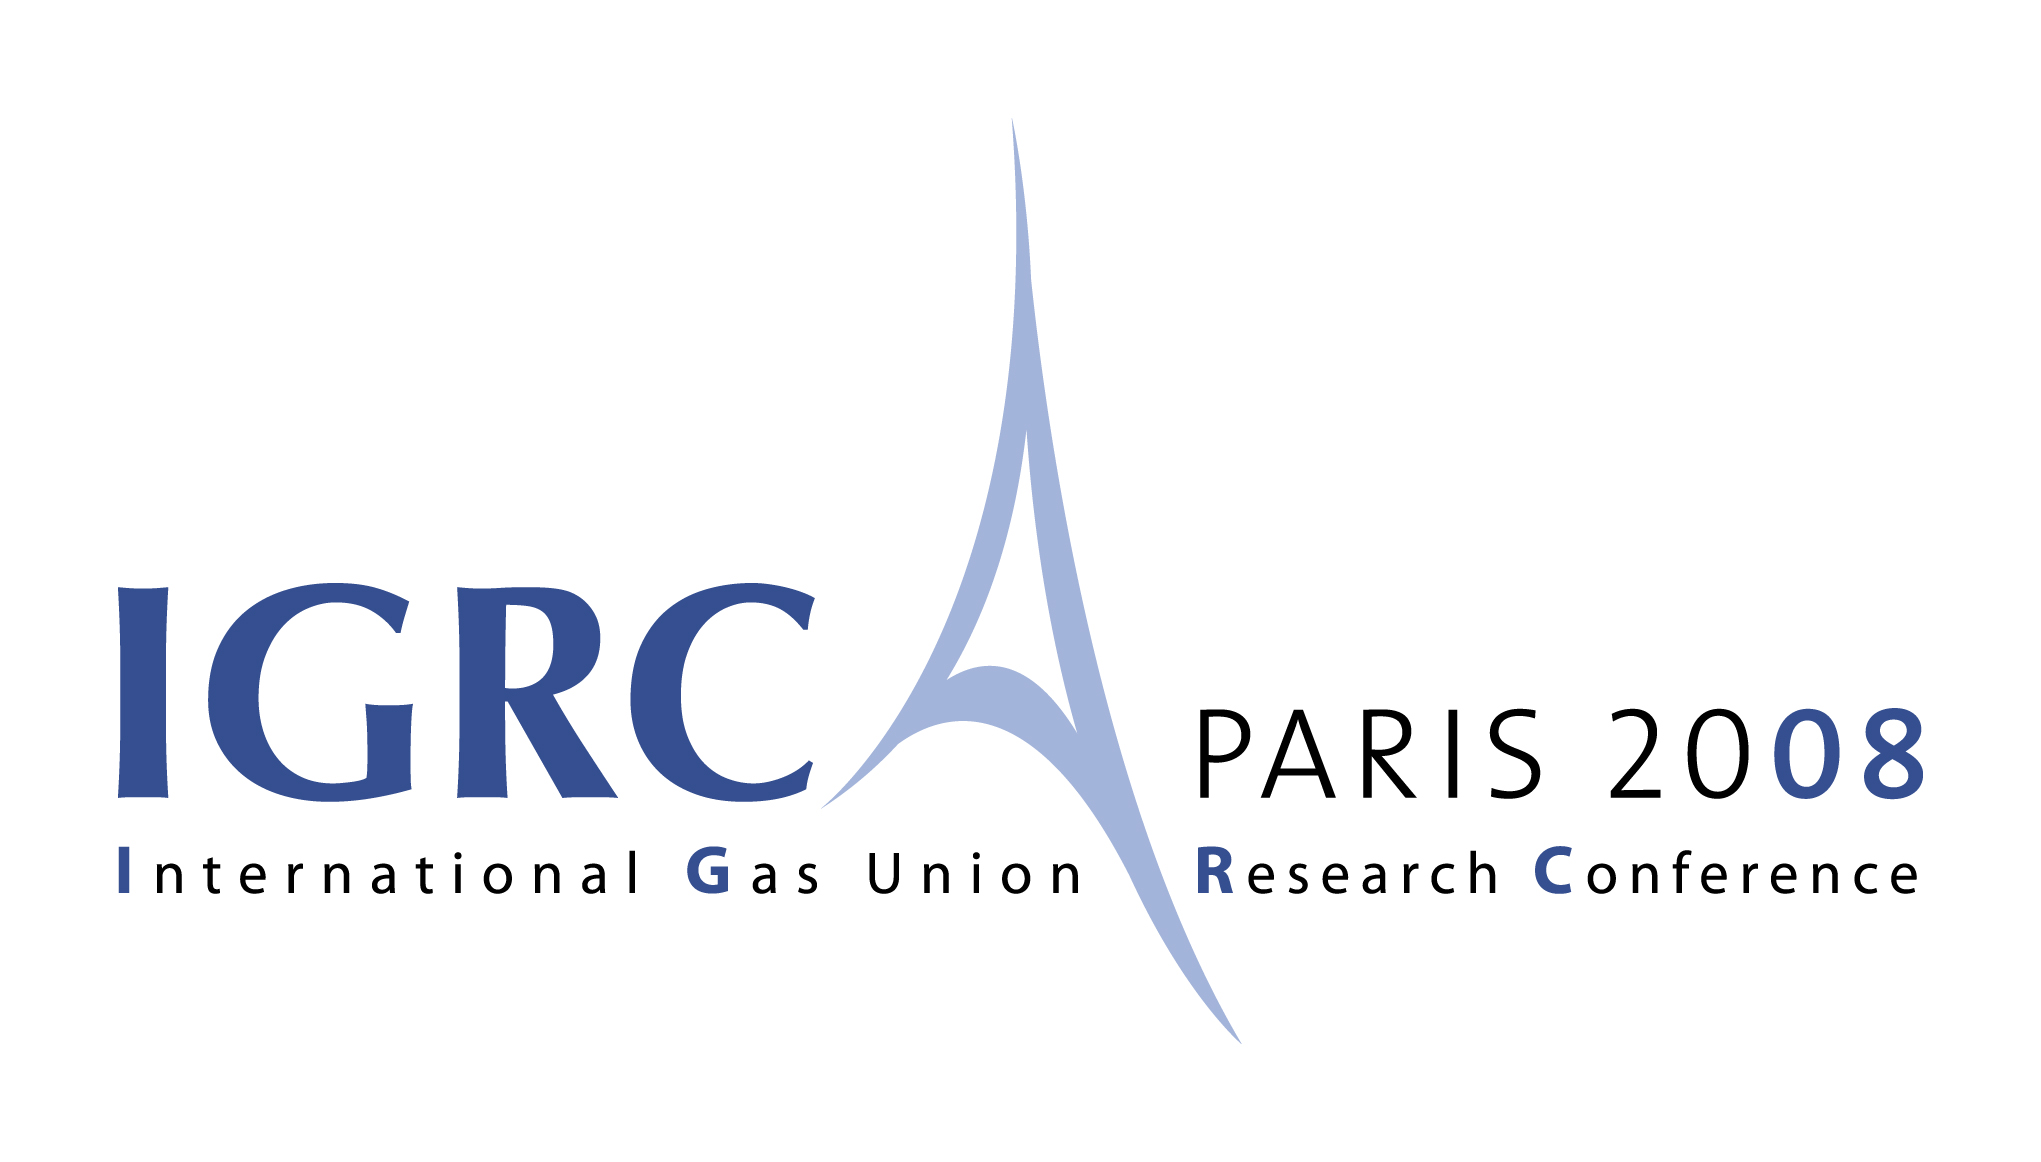 IGRC 2008 logo